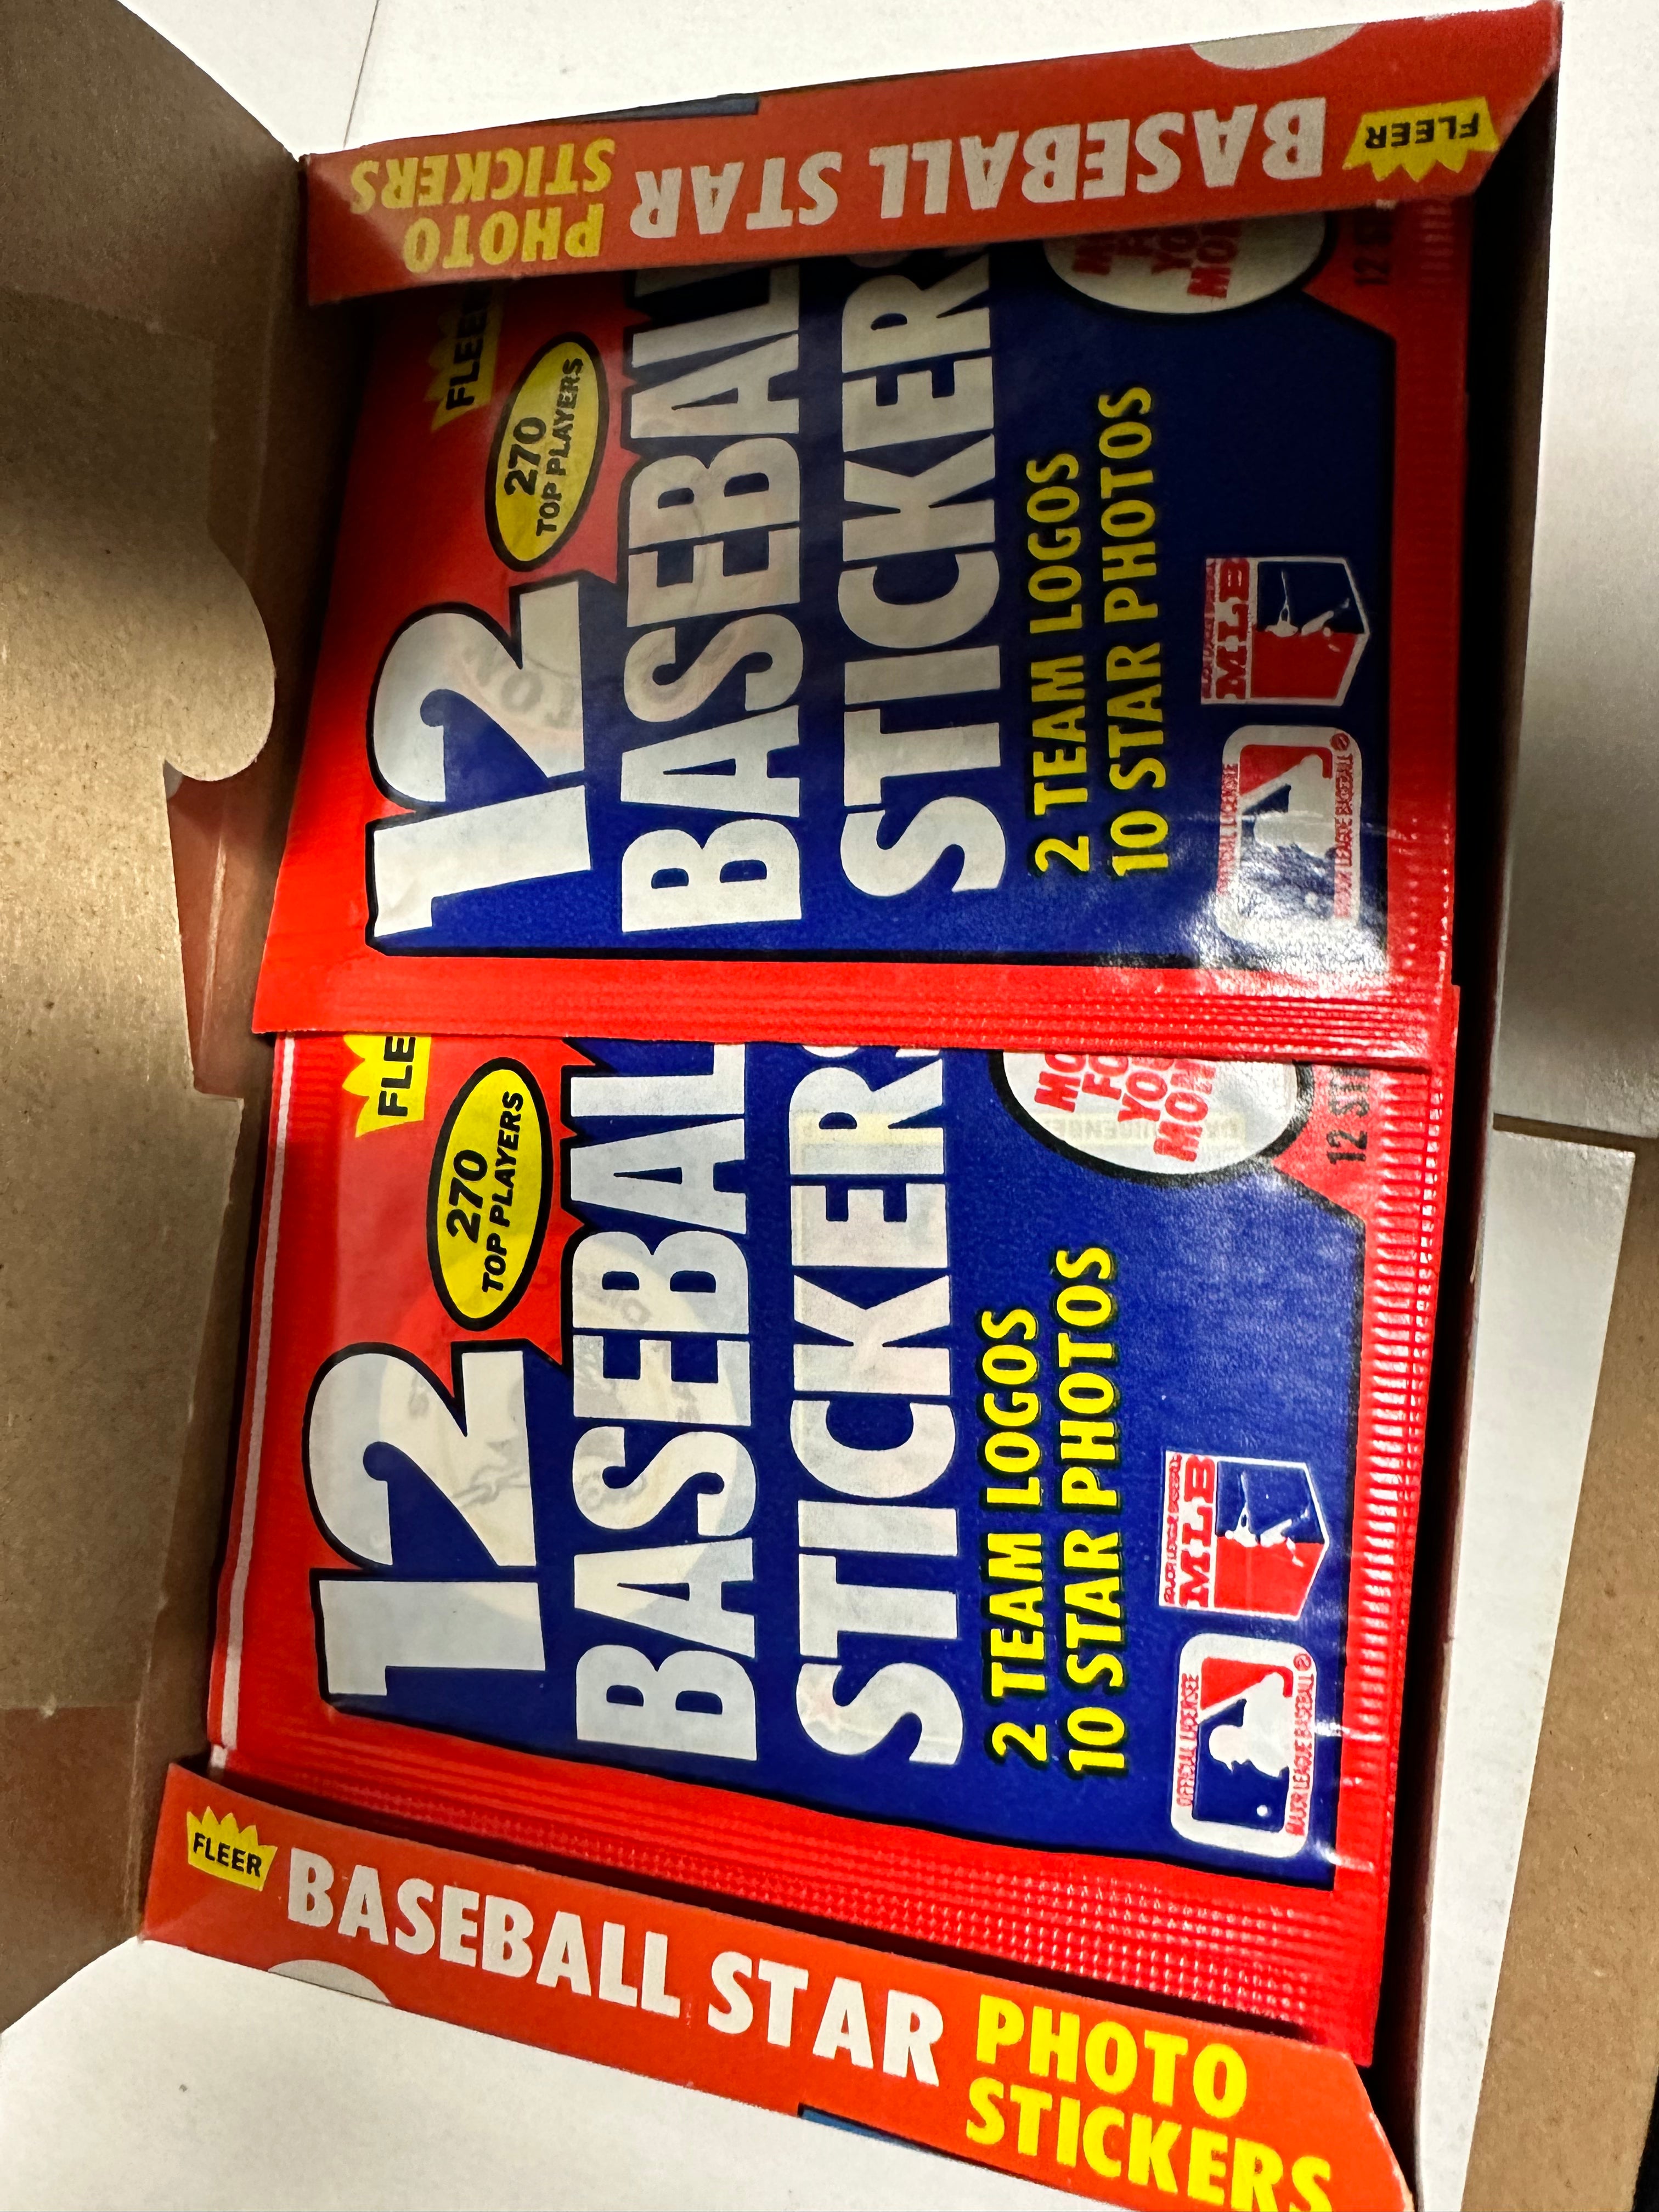 1983 Fleer baseball stickers 48 packs box